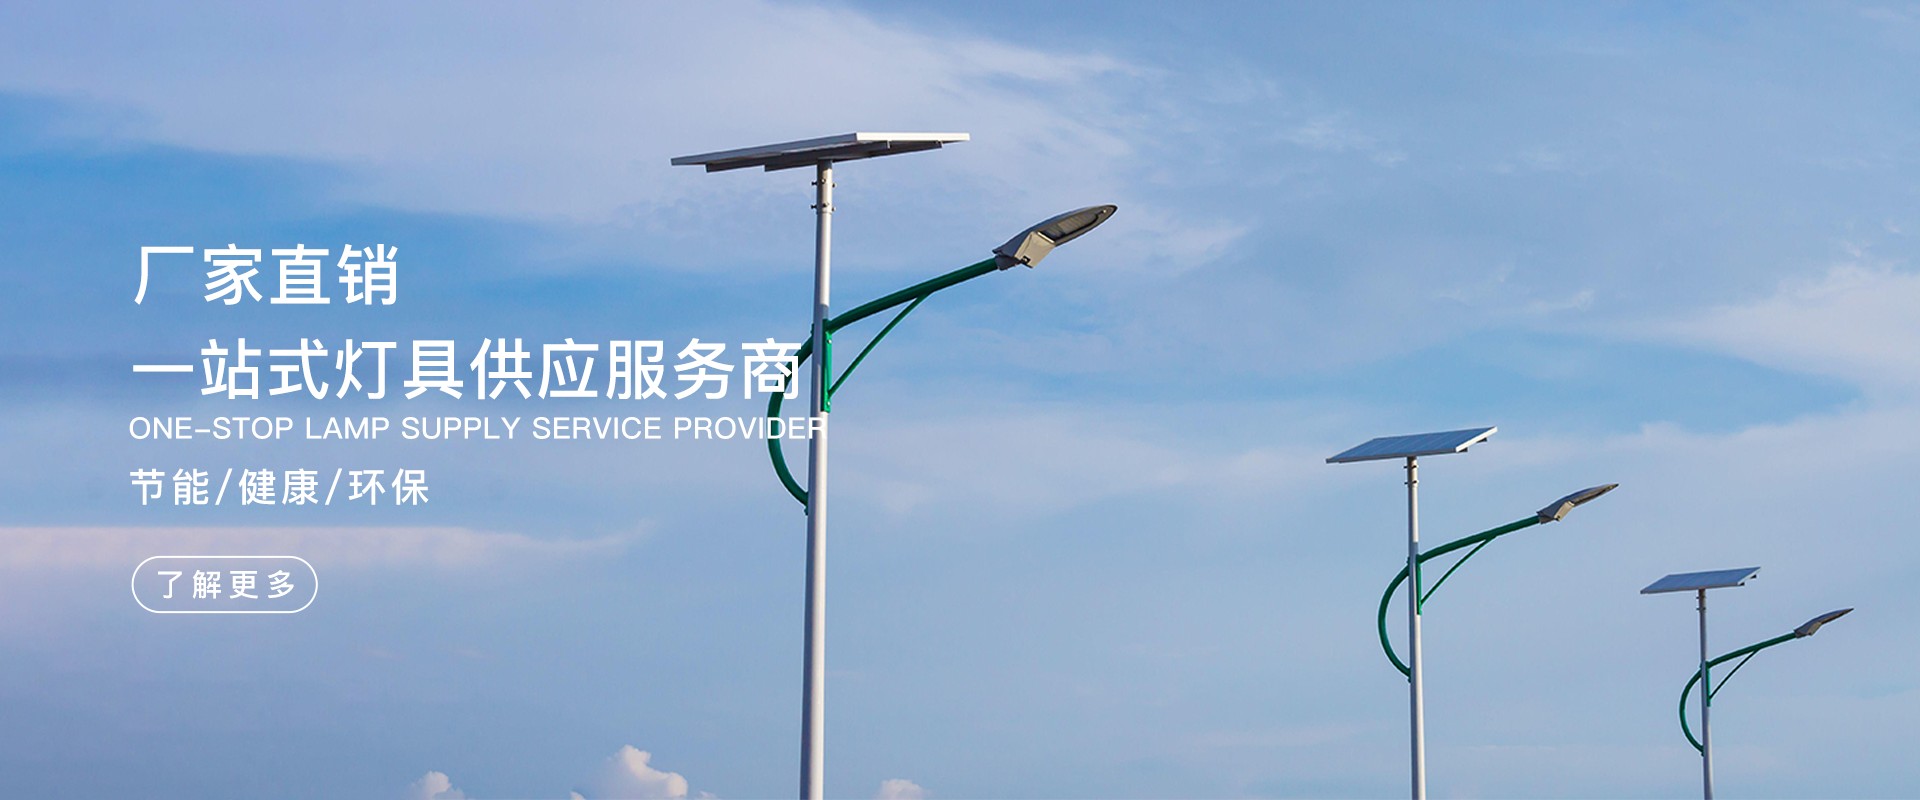 云南BC贷新能源科技有限公司